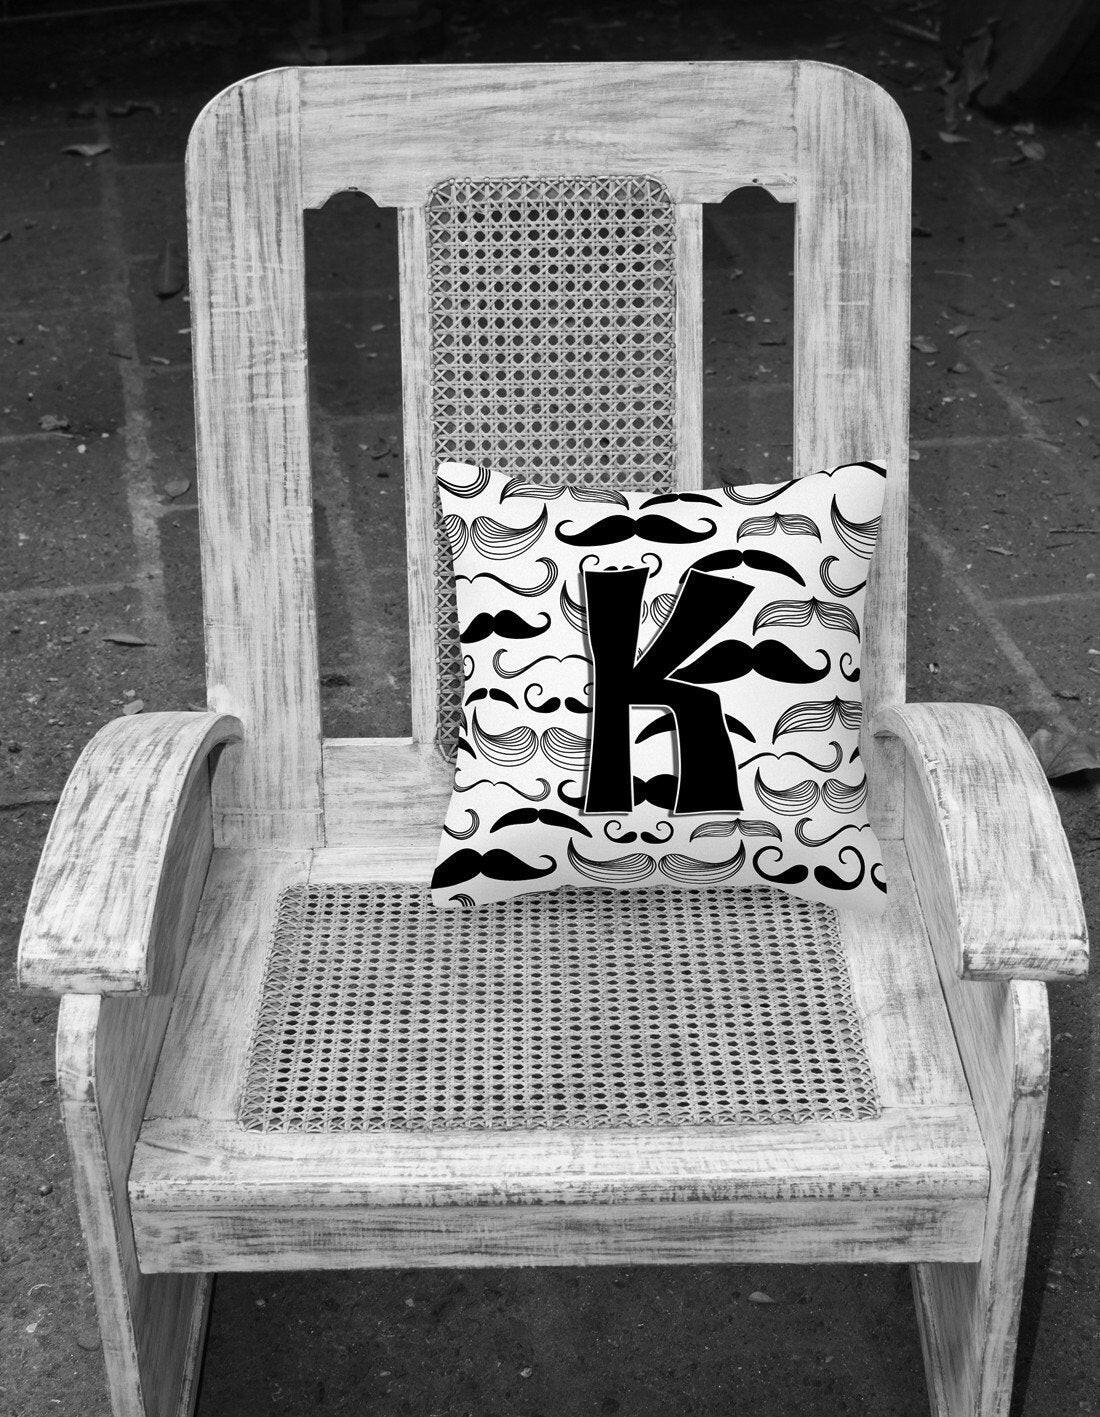 Letter K Moustache Initial Canvas Fabric Decorative Pillow CJ2009-KPW1414 by Caroline's Treasures